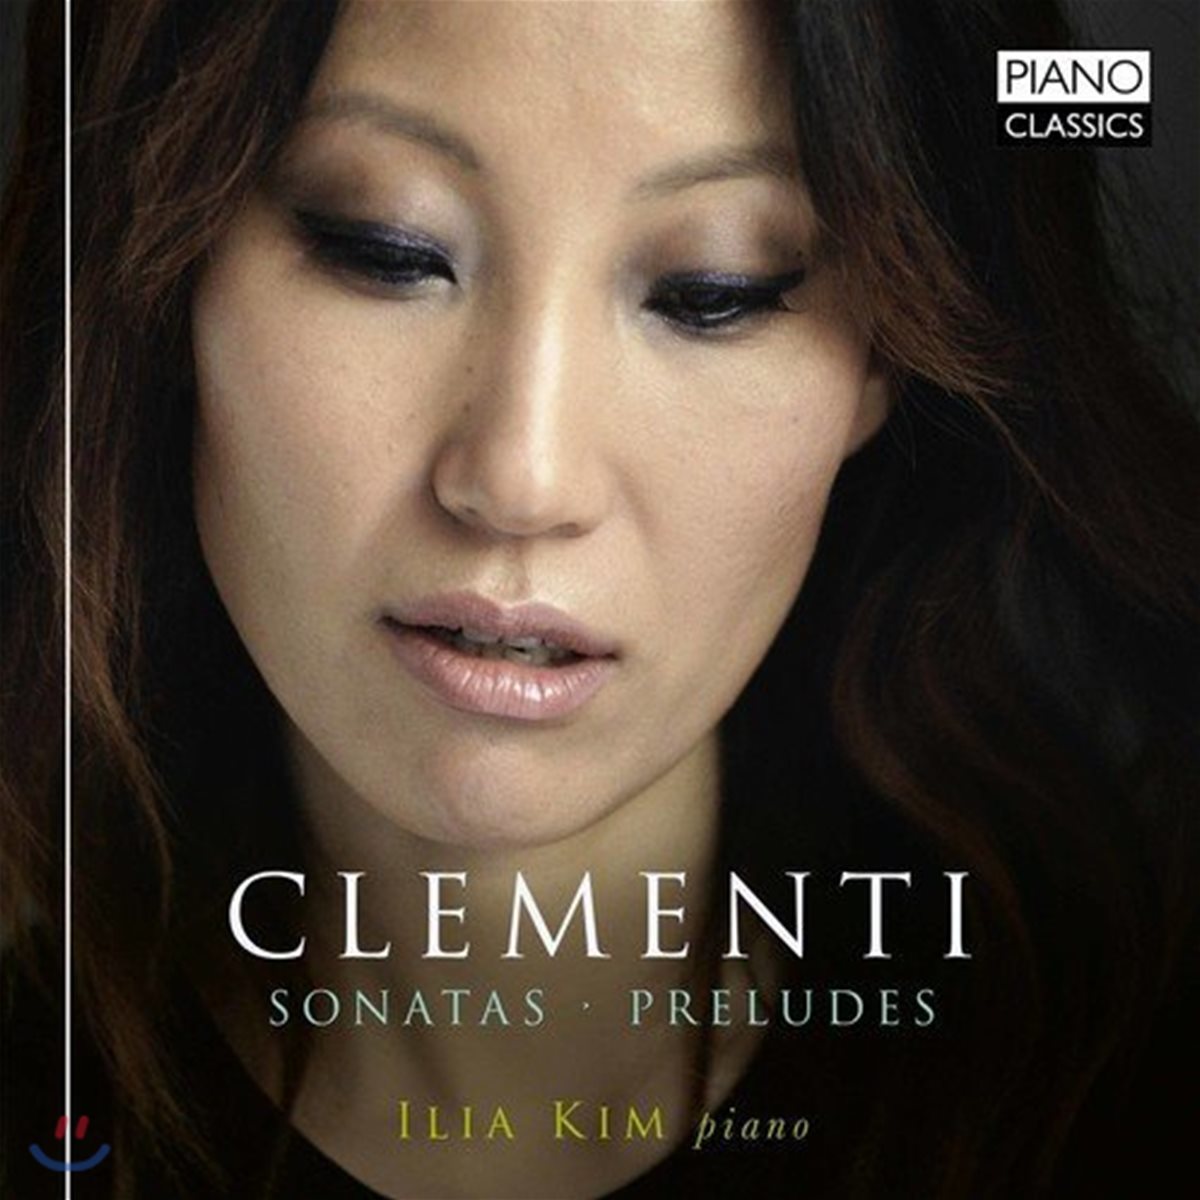 일리아 김 (Ilia Kim) - 클레멘티: 피아노 소나타, 프렐류드 작품집 (Muzio Clementi: Piano Sonatas, Preludes)